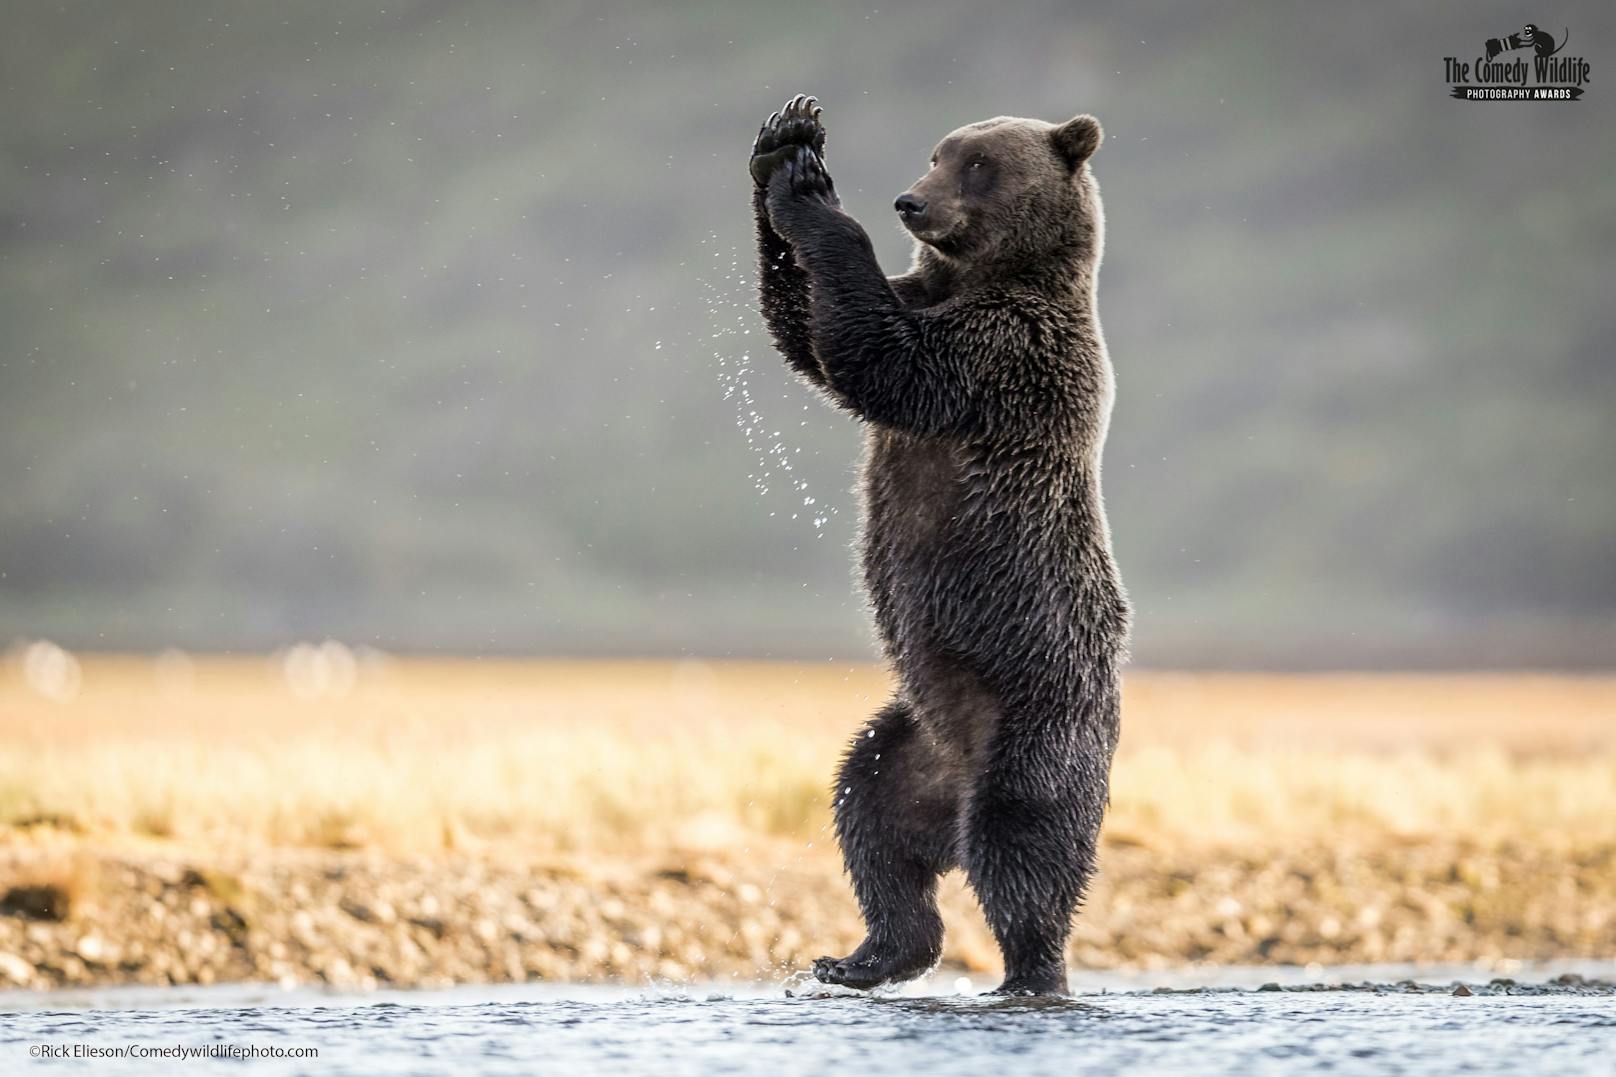 Dieses Bild eines waschechten Grizzly Bären zeigt ihm laut Titel beim Tanz zu "Cotton Eyed Joe".&nbsp;